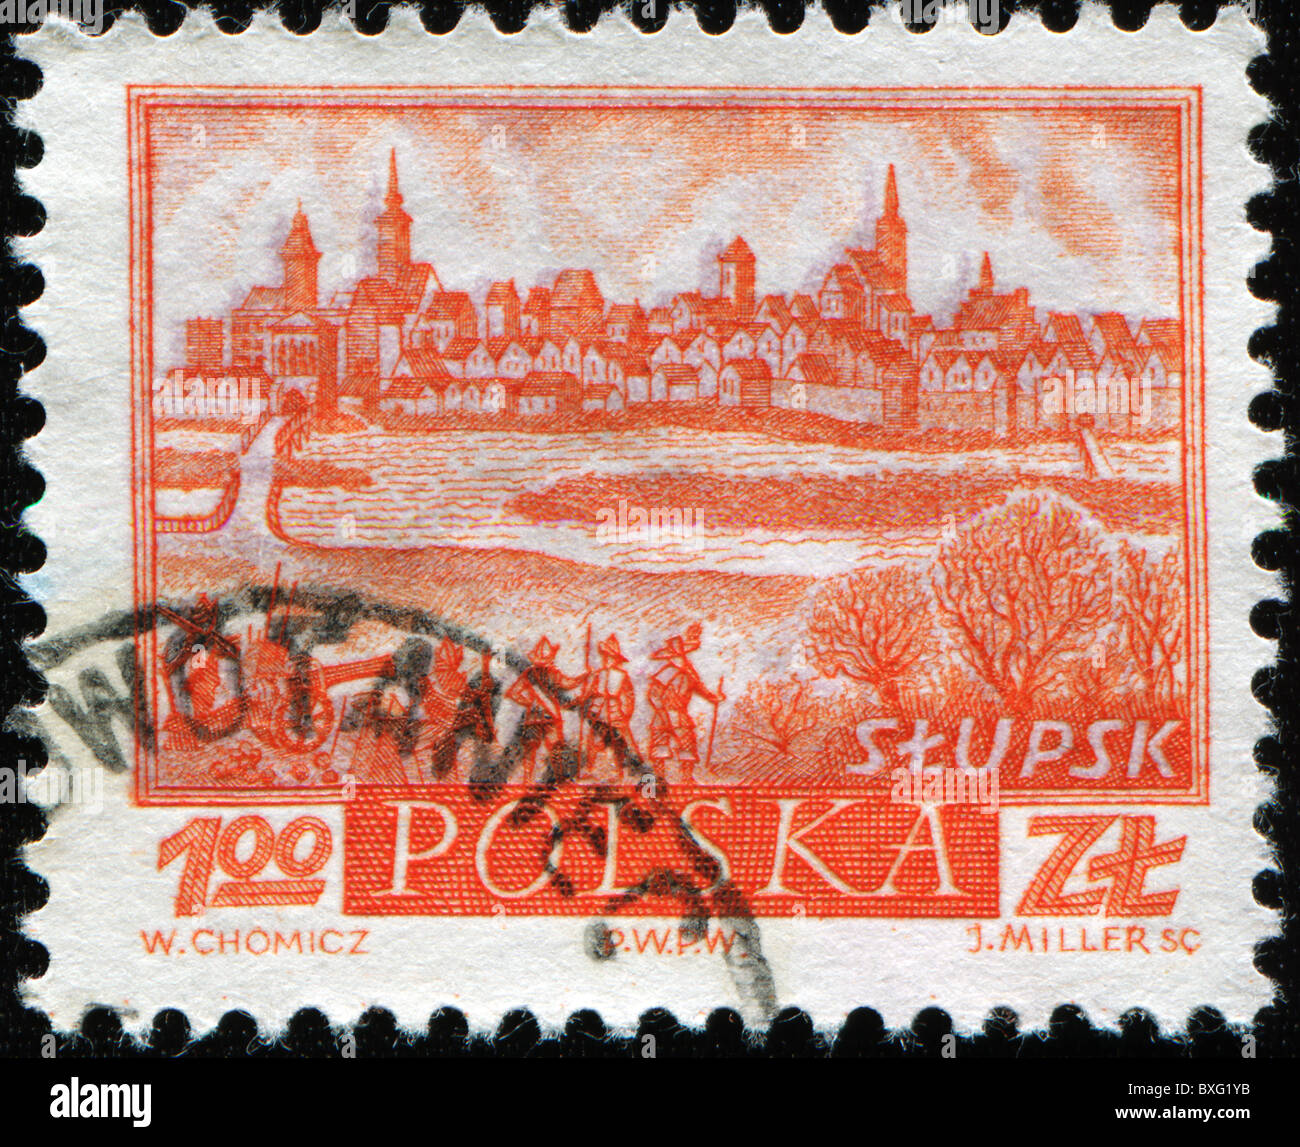 Polen - ca. 1960: Eine Briefmarke gedruckt in Polen zeigt Ansicht von Słupsk, ca. 1960 Stockfoto